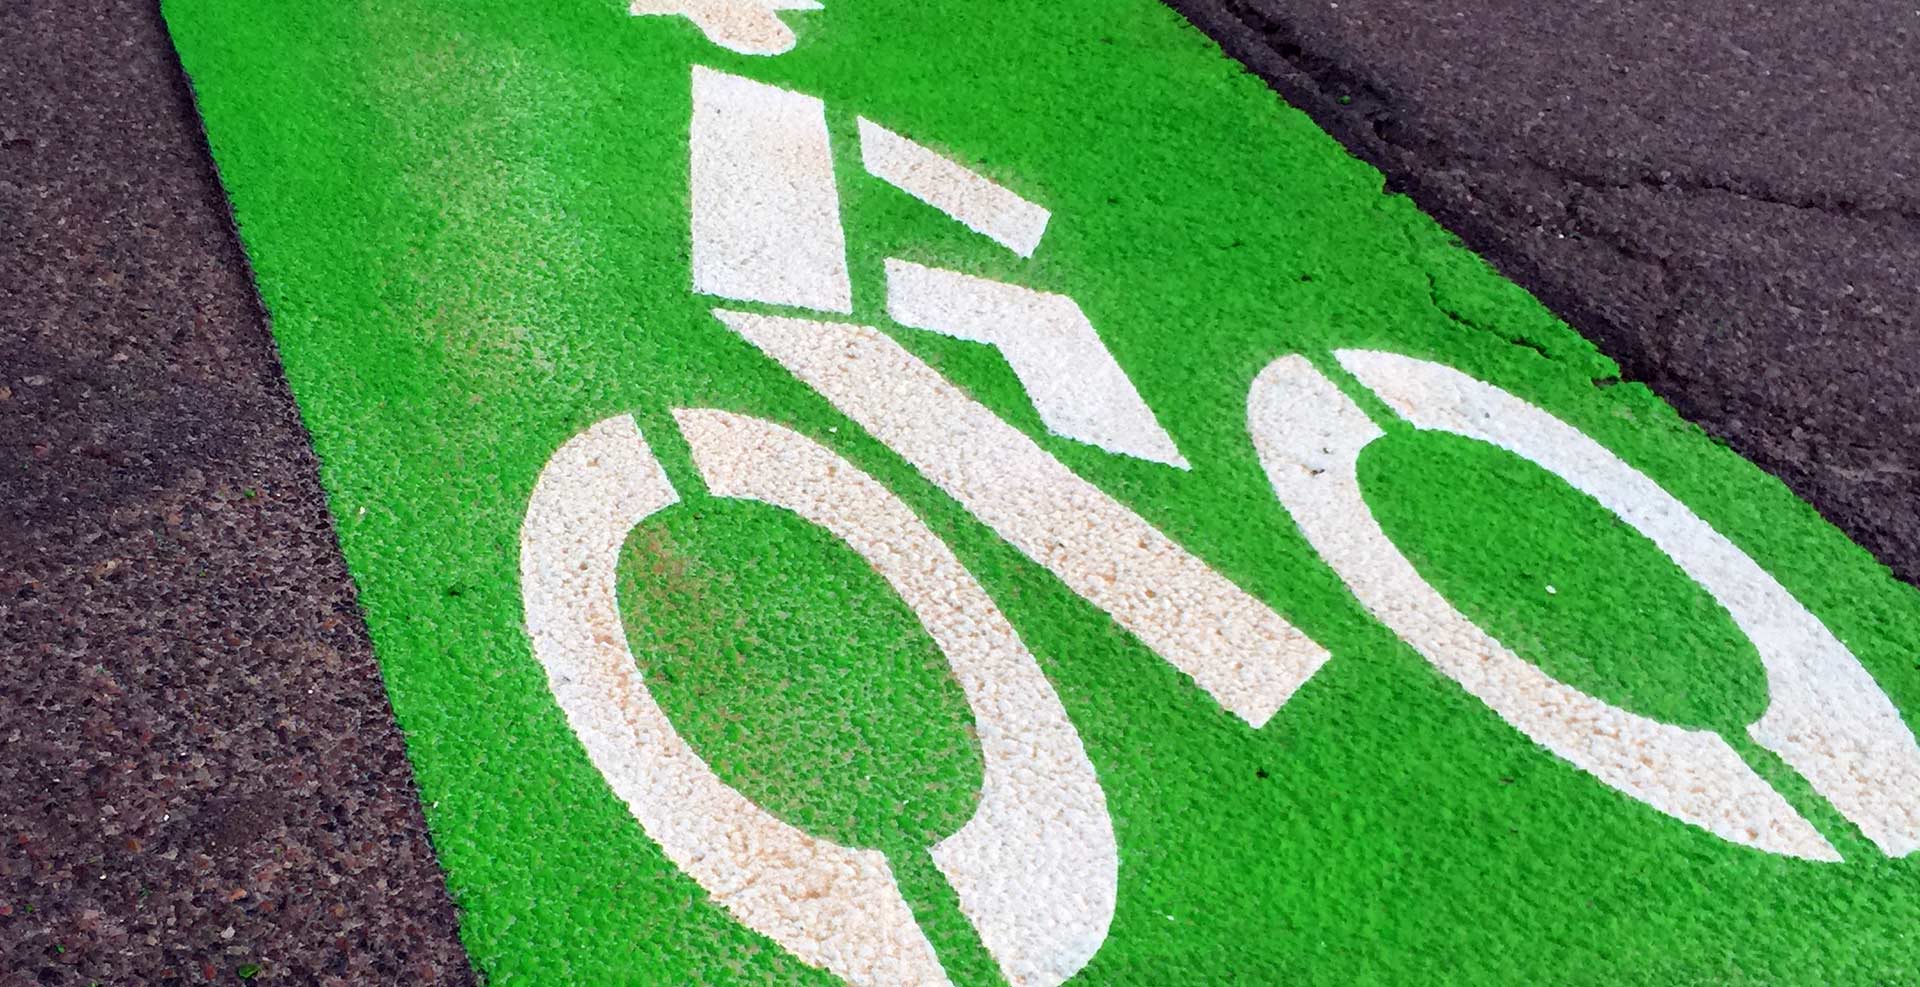 Bike lane symbol